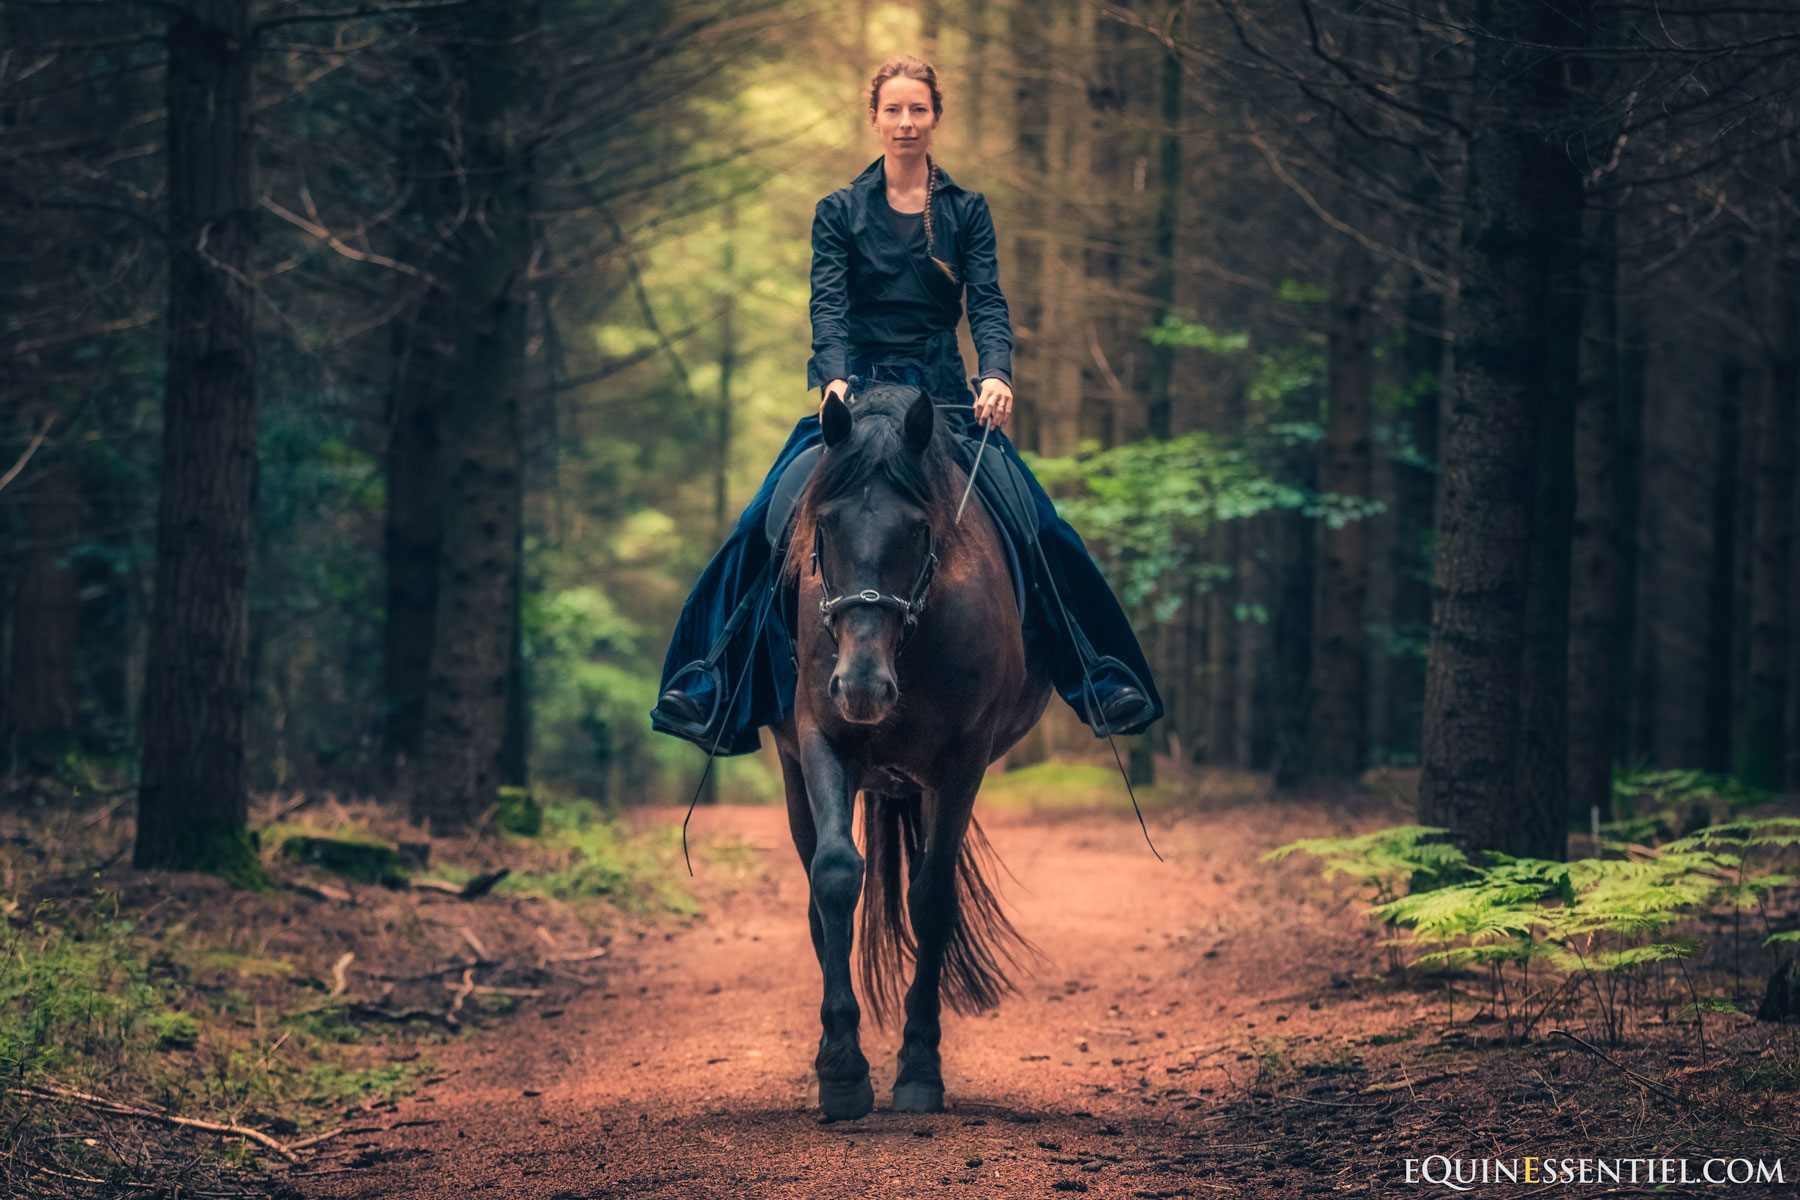 Une selle sur mesures pour votre cheval, un vrai défi ! Laure Souquet - Equinessentiel